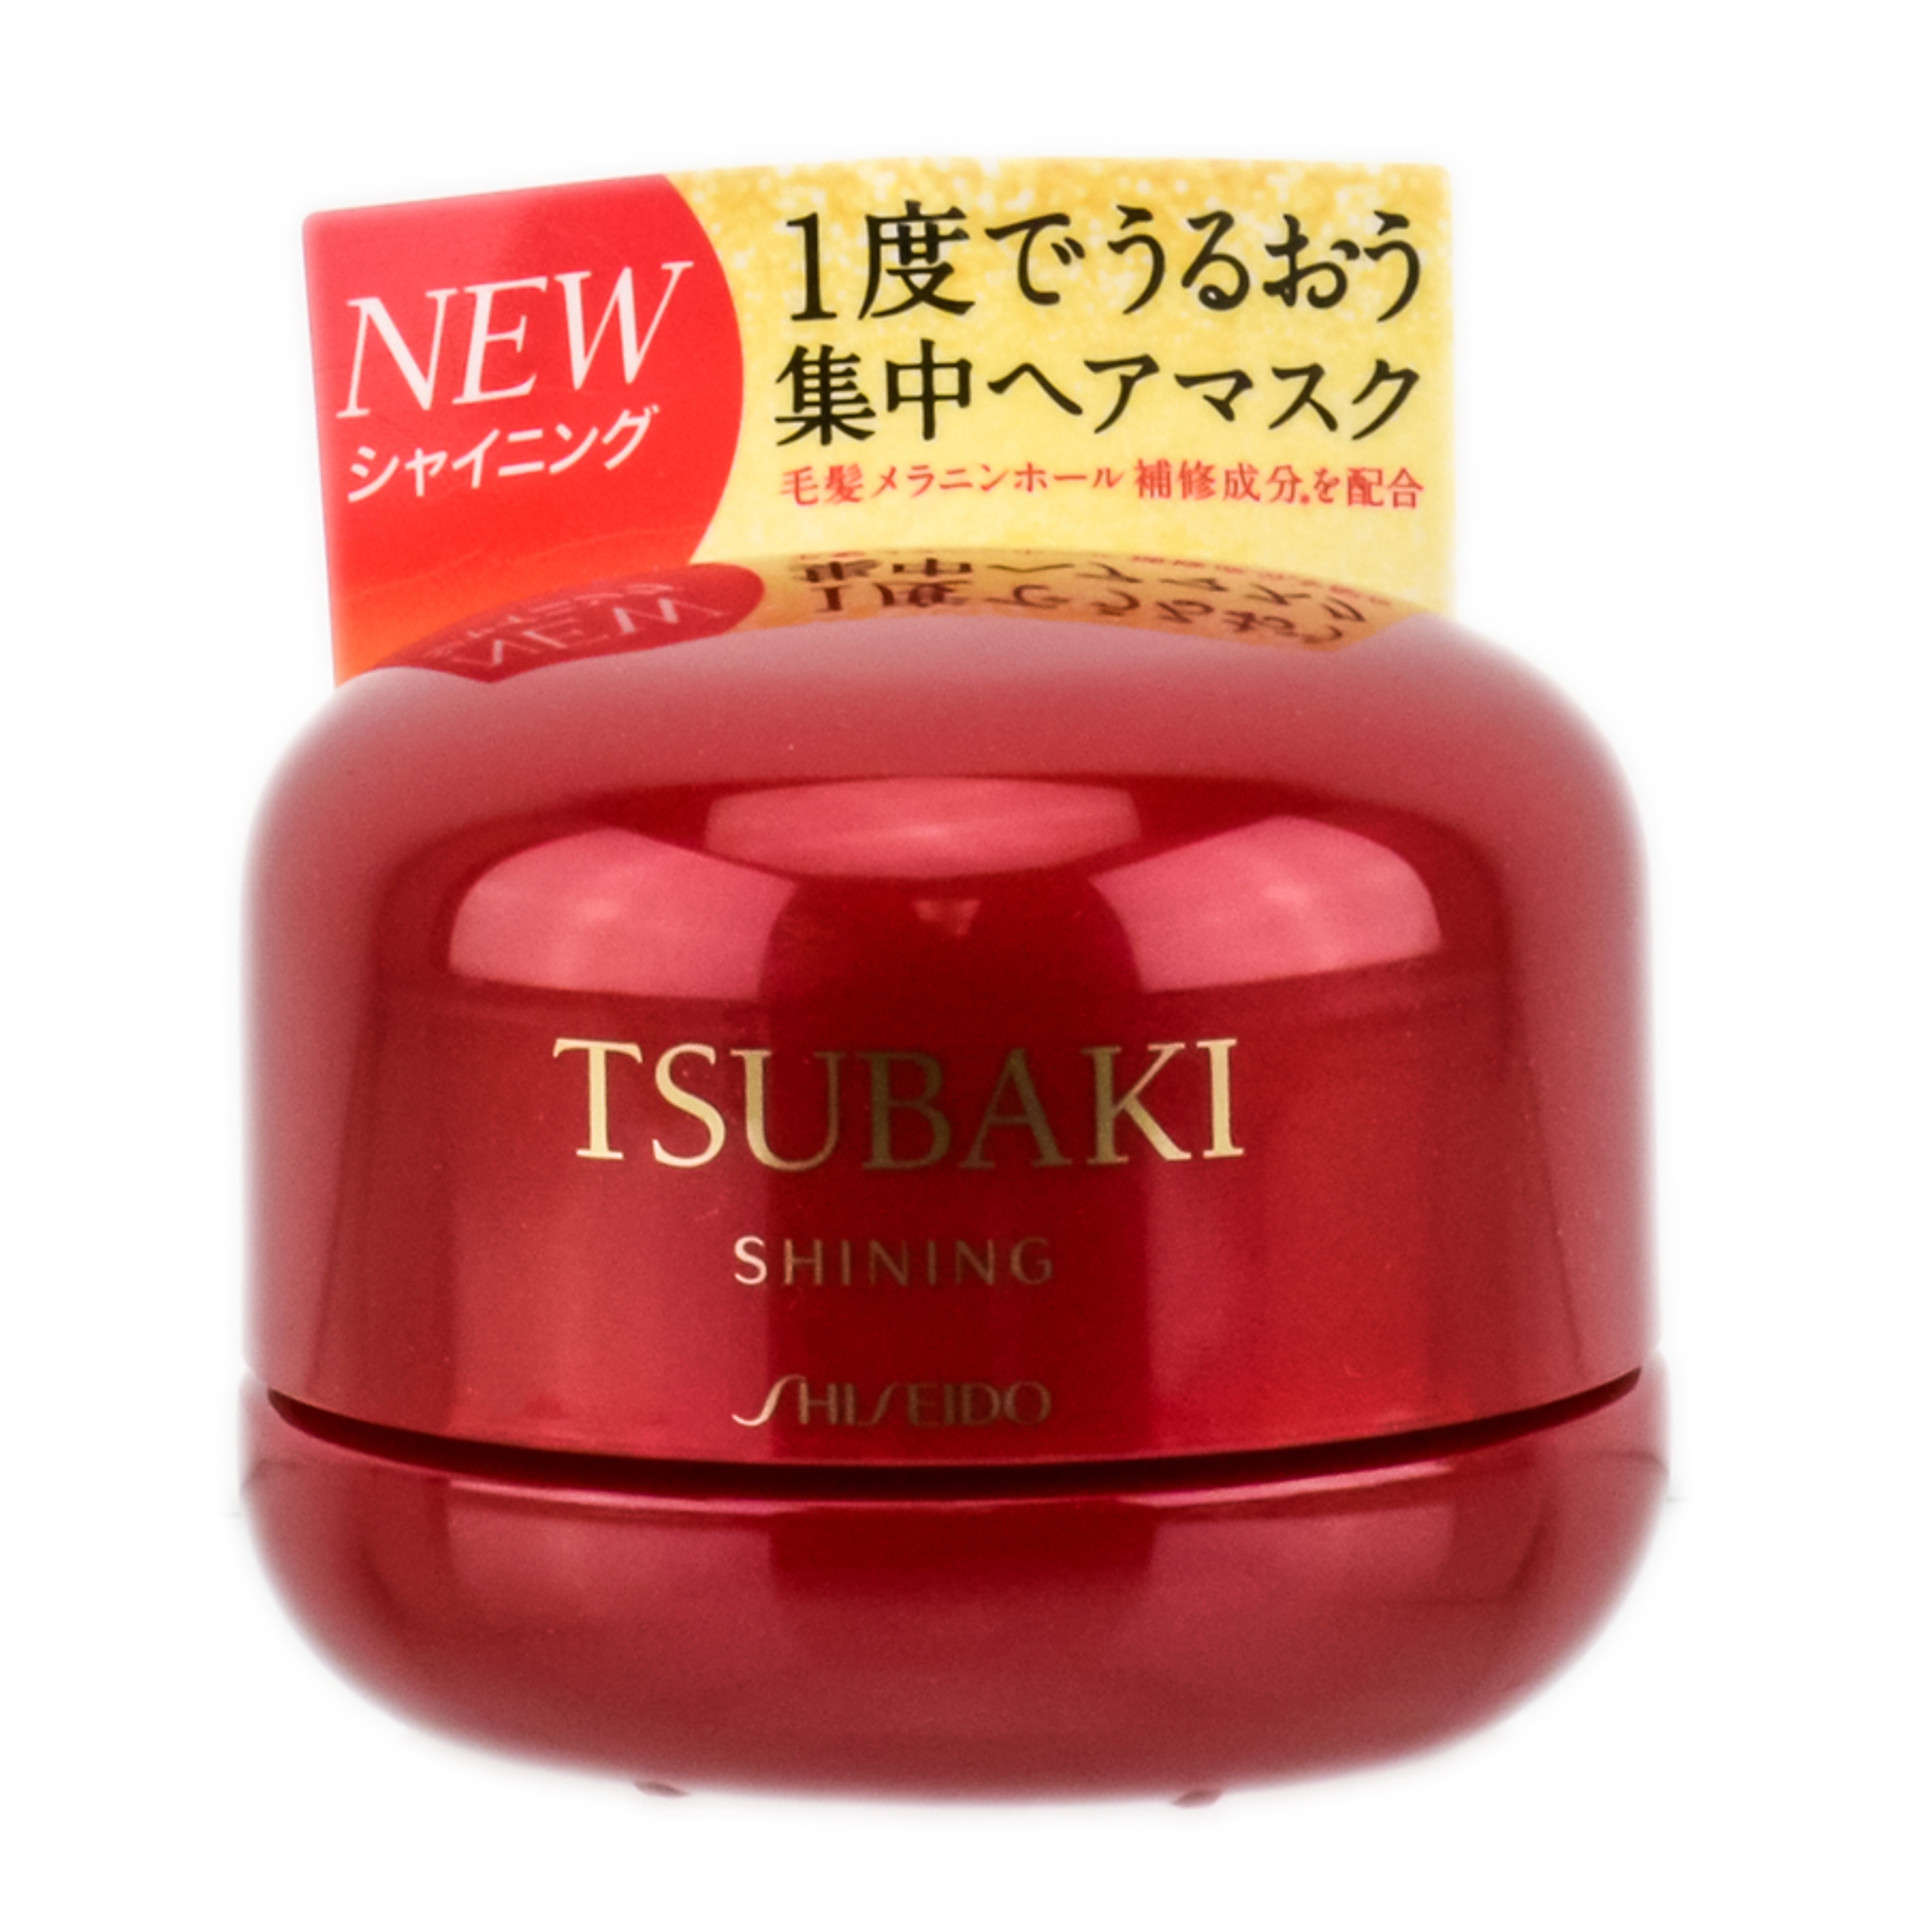 Shiseido Tsubaki Camellia Hair Oil SleekShop.com